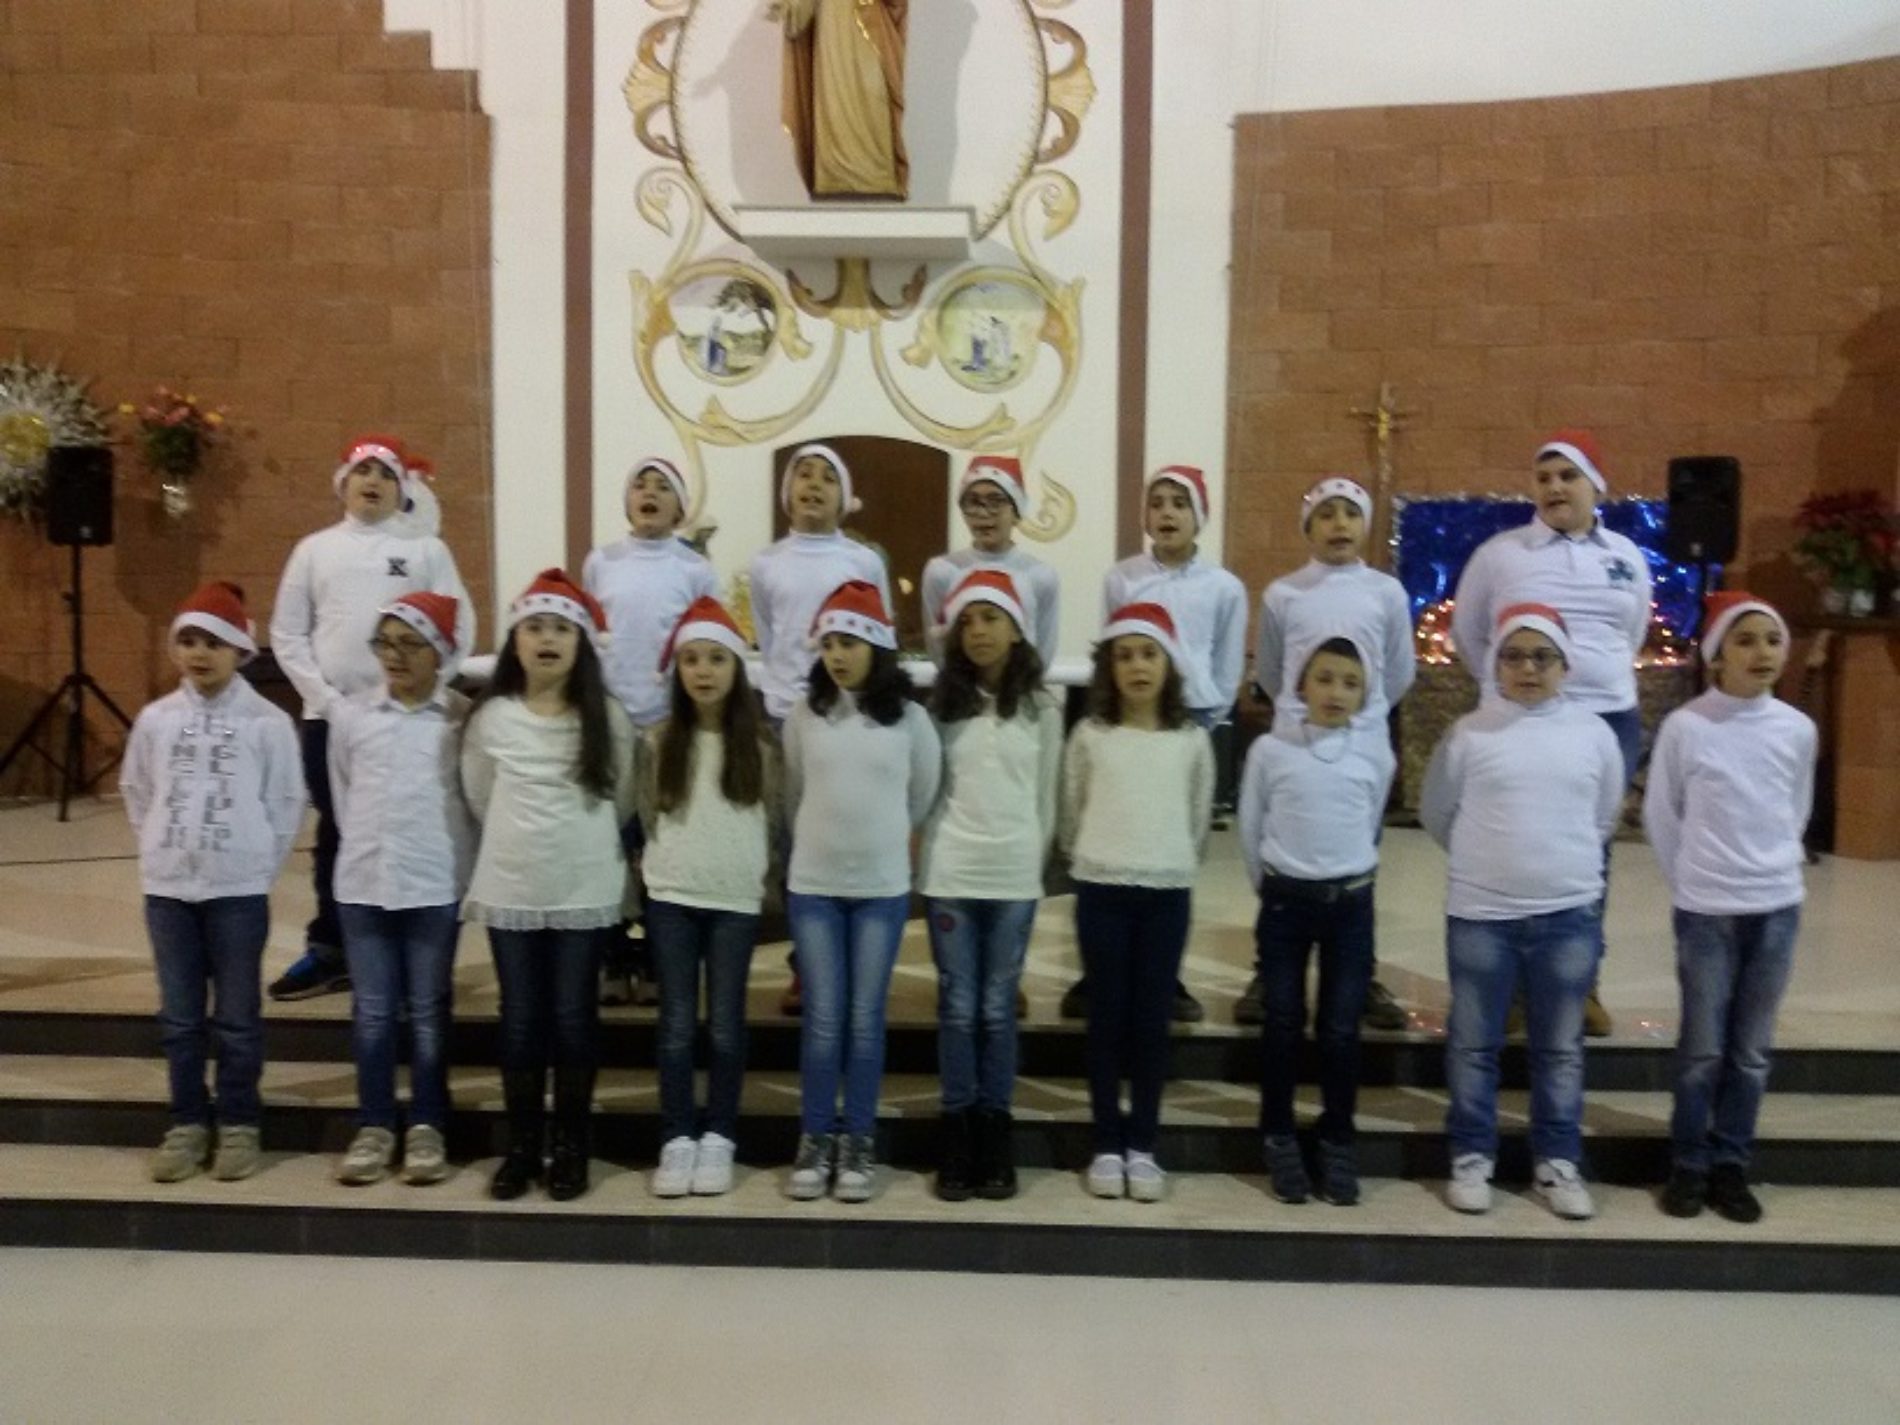 Concerto di Natale da parte degli alunni del “San Giovanni Bosco” per cancellare l’indifferenza, la cattiveria e donare un’atmosfera di pace, risate e allegria